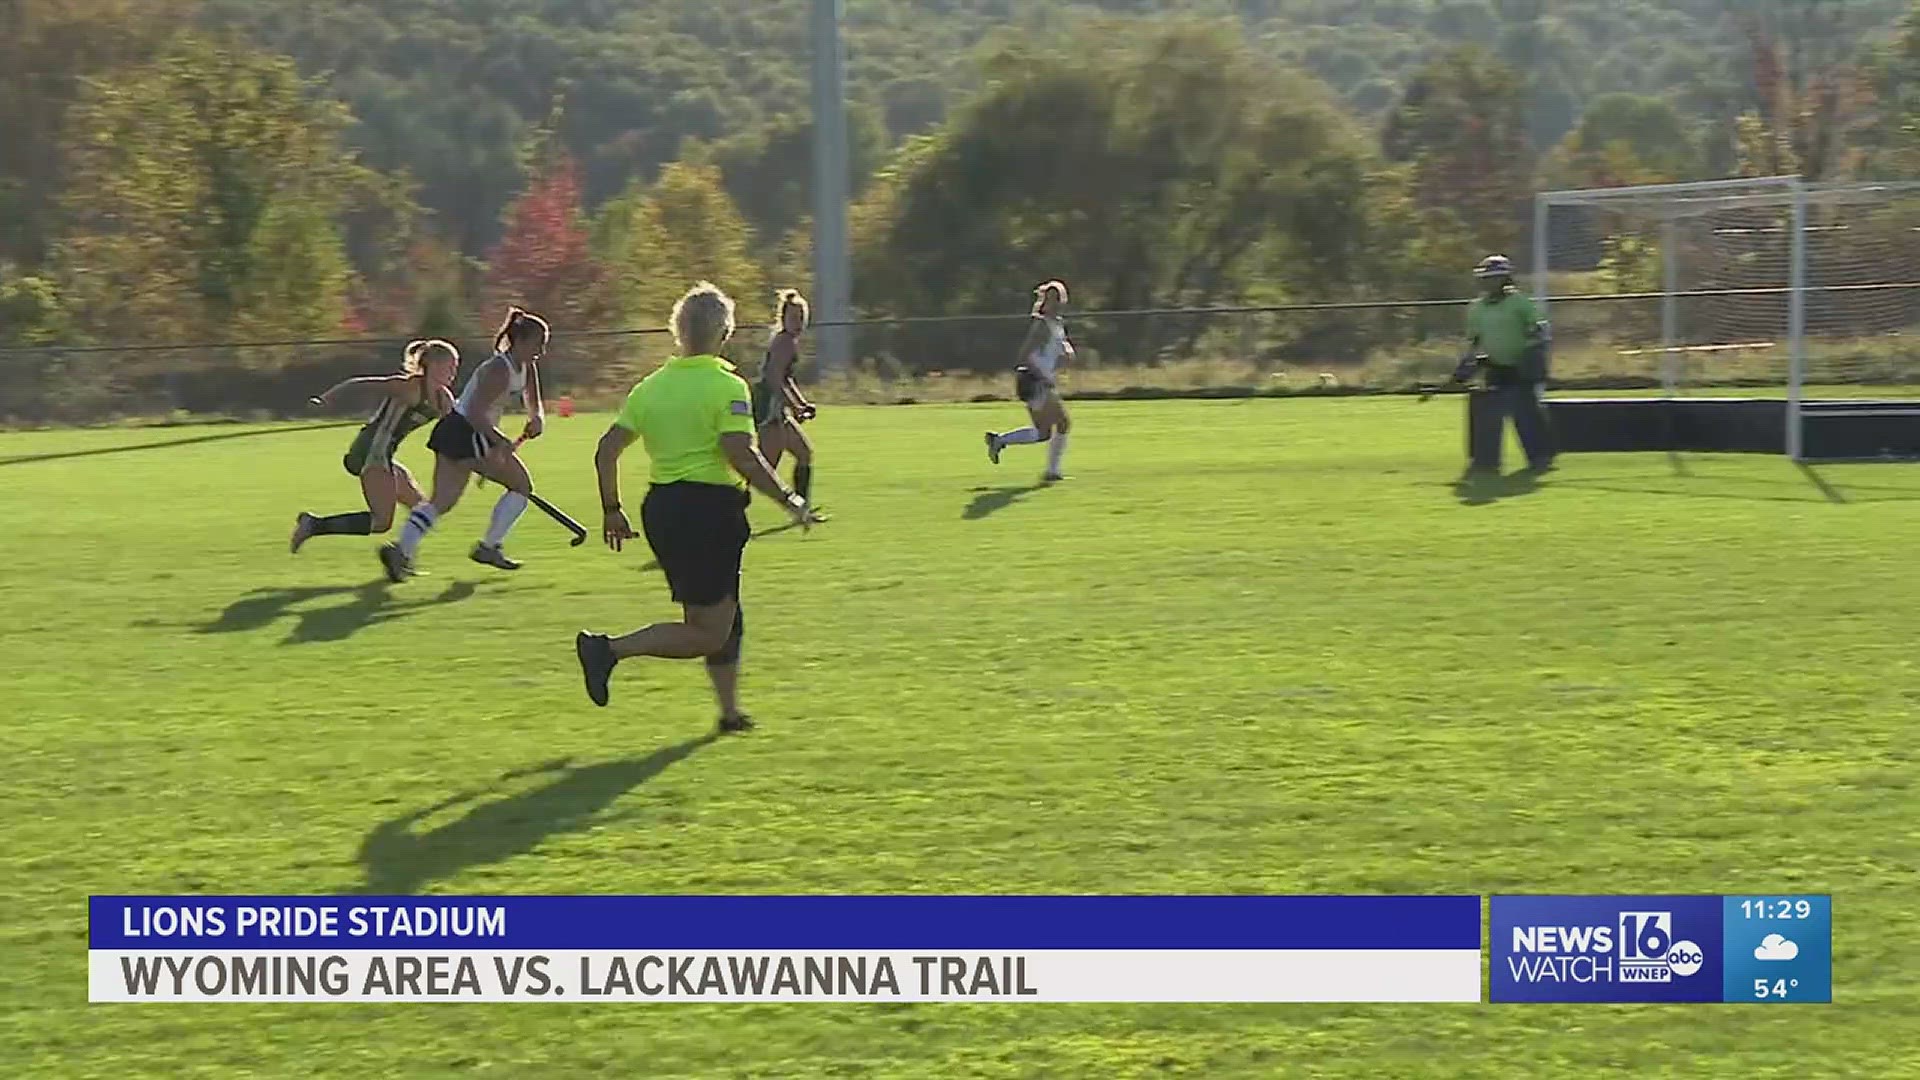 Wyoming Area vs. Lackawanna Trail field hockey highlights